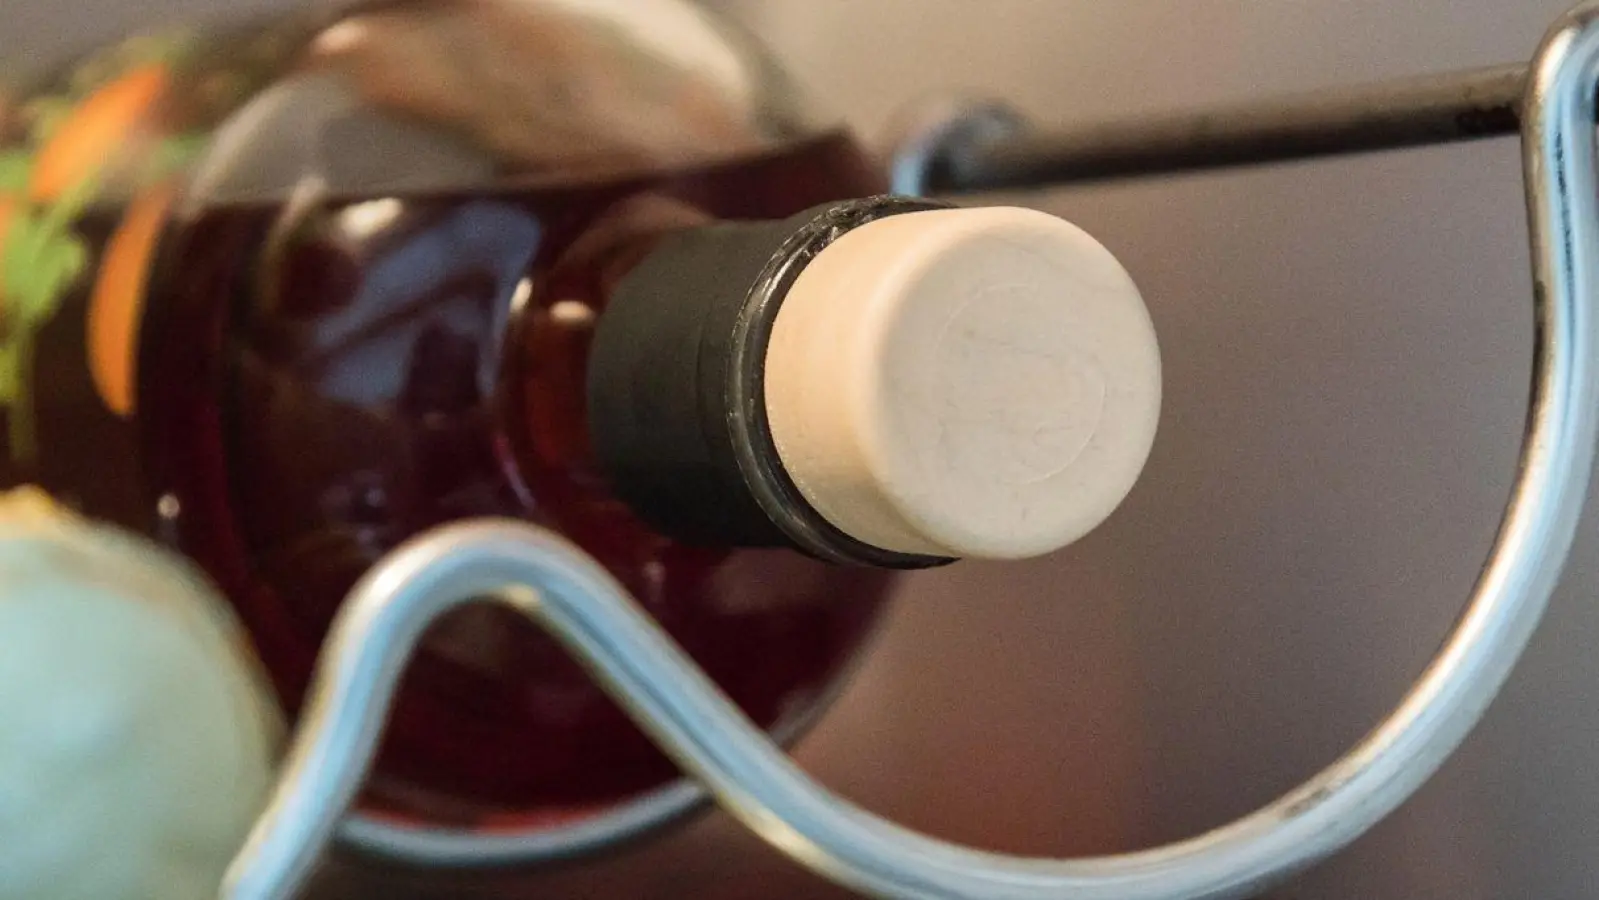 Damit Farbe und Aroma des Arancello-Likörs nicht an Qualität verlieren, sollte die Flasche dunkel, kühl und fest verschlossen aufbewahrt werden - gern auch für den nächsten Spritz gleich neben dem Sekt im Kühlschrank. (Foto: Christin Klose/dpa-tmn/dpa)